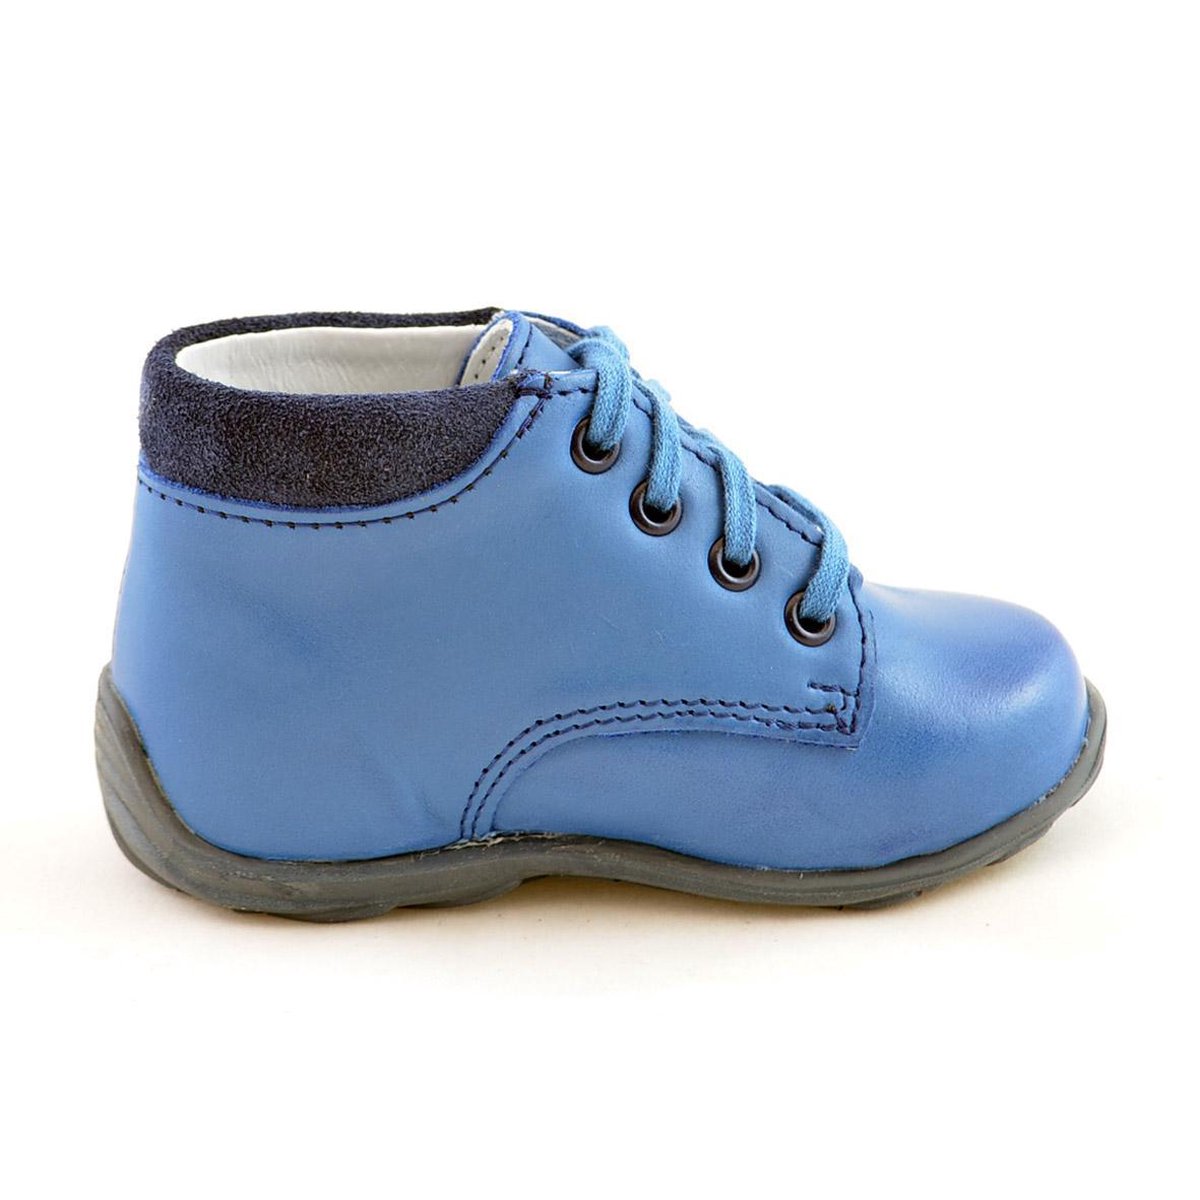 Blauwe leren jongens schoenen - Maat 19